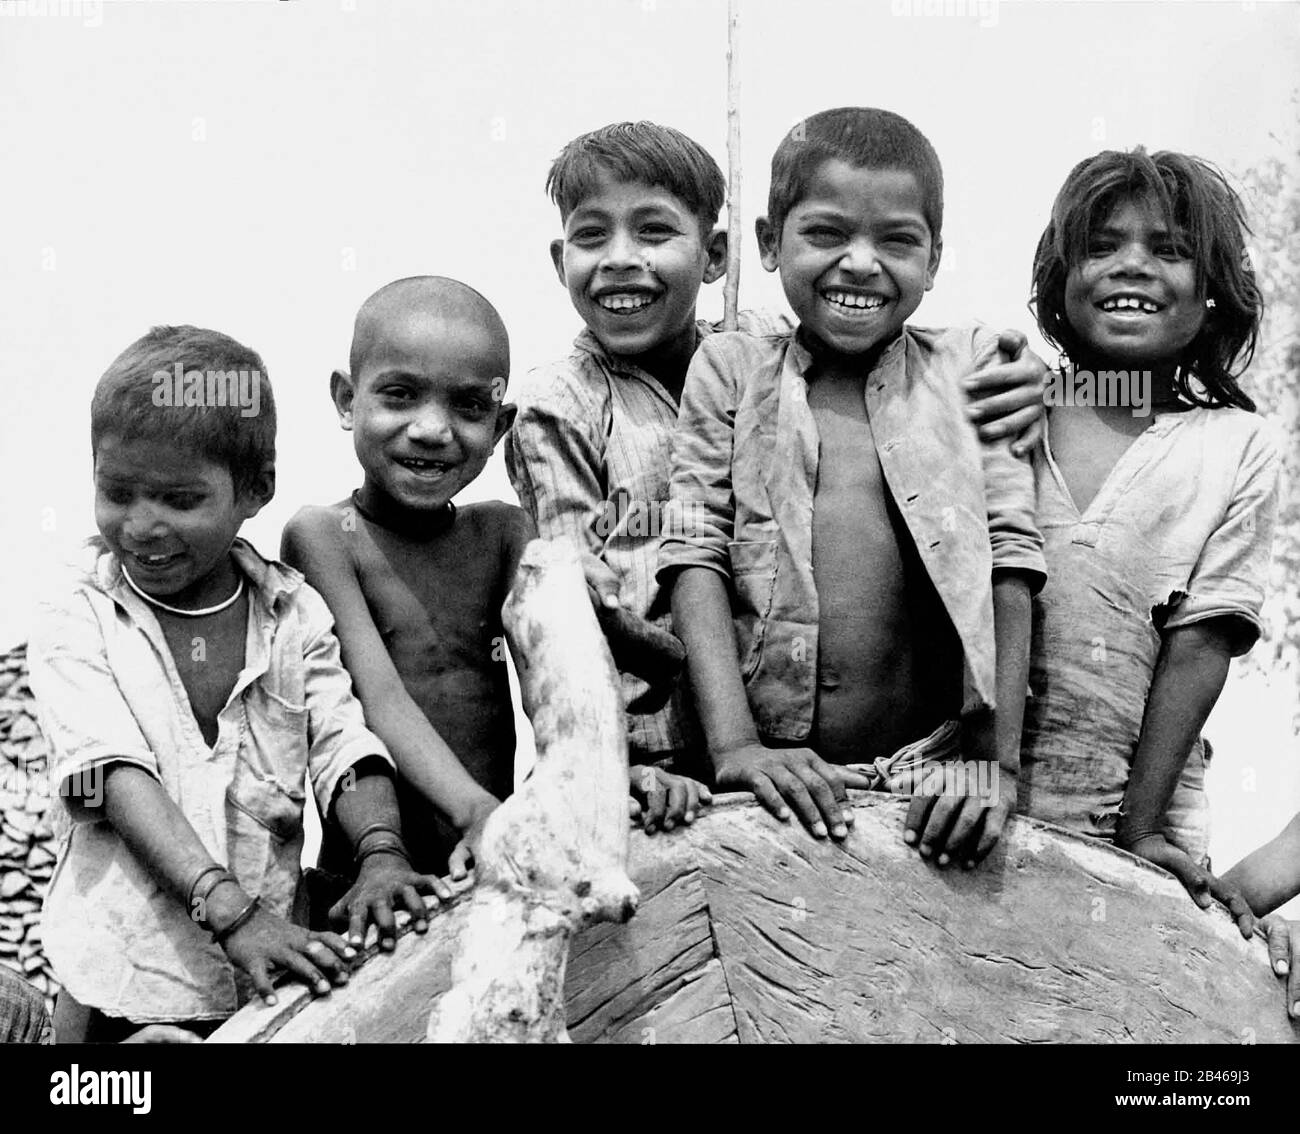 Indische glückliche ländliche Kinder lächelnd, Uttar Pradesh, Indien, 1953, alter Jahrgang 1900s Bild Stockfoto